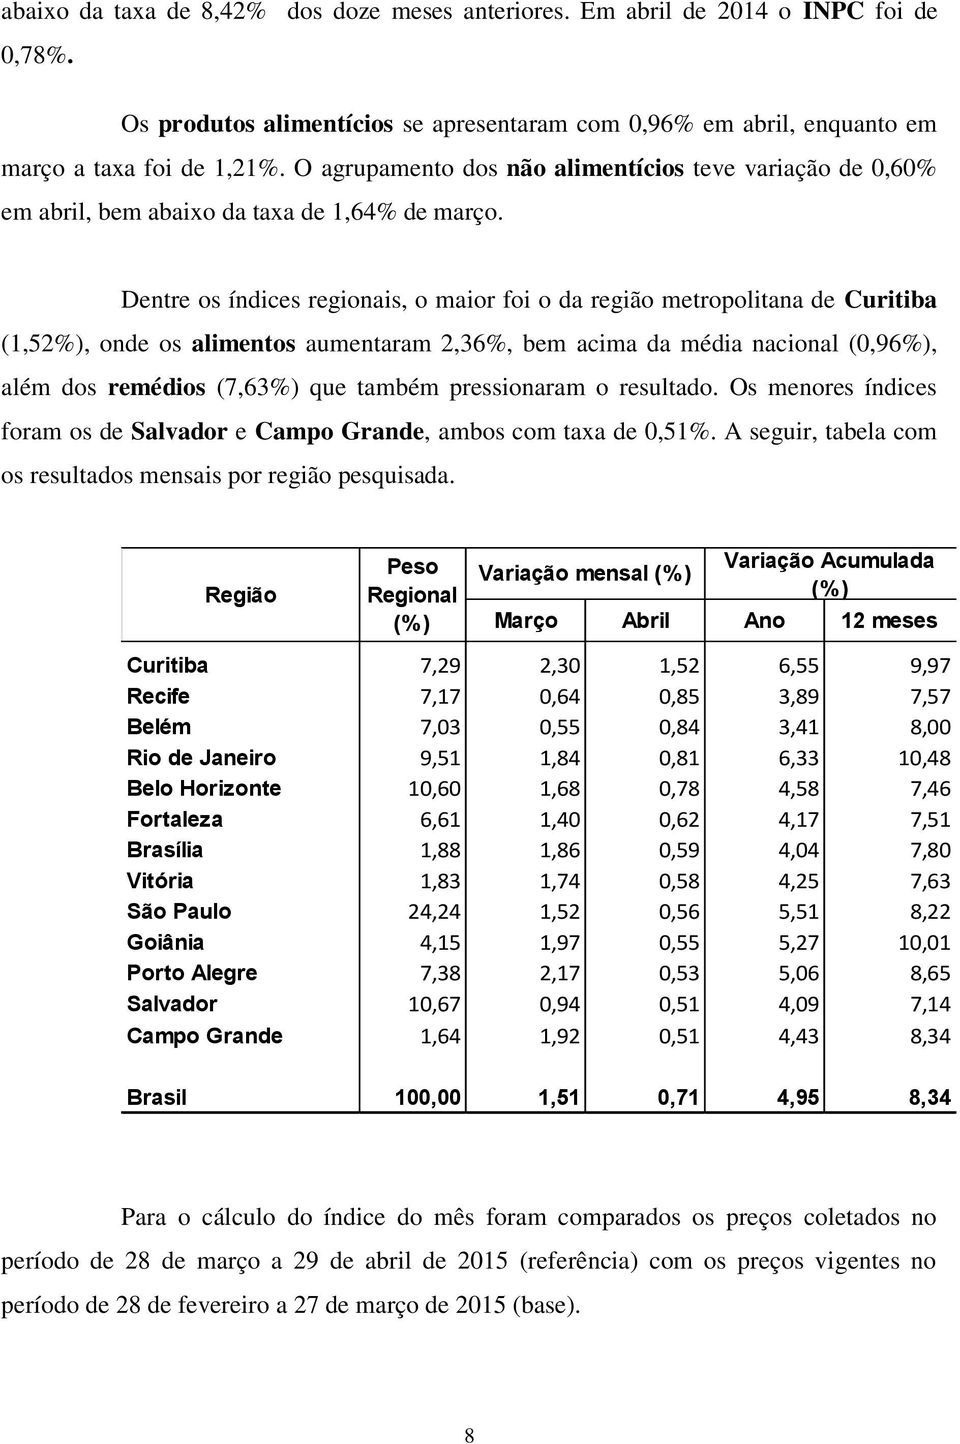 Dentre os índices regionais, o maior foi o da região metropolitana de Curitiba (1,52%), onde os alimentos aumentaram 2,36%, bem acima da média nacional (0,96%), além dos remédios (7,63%) que também